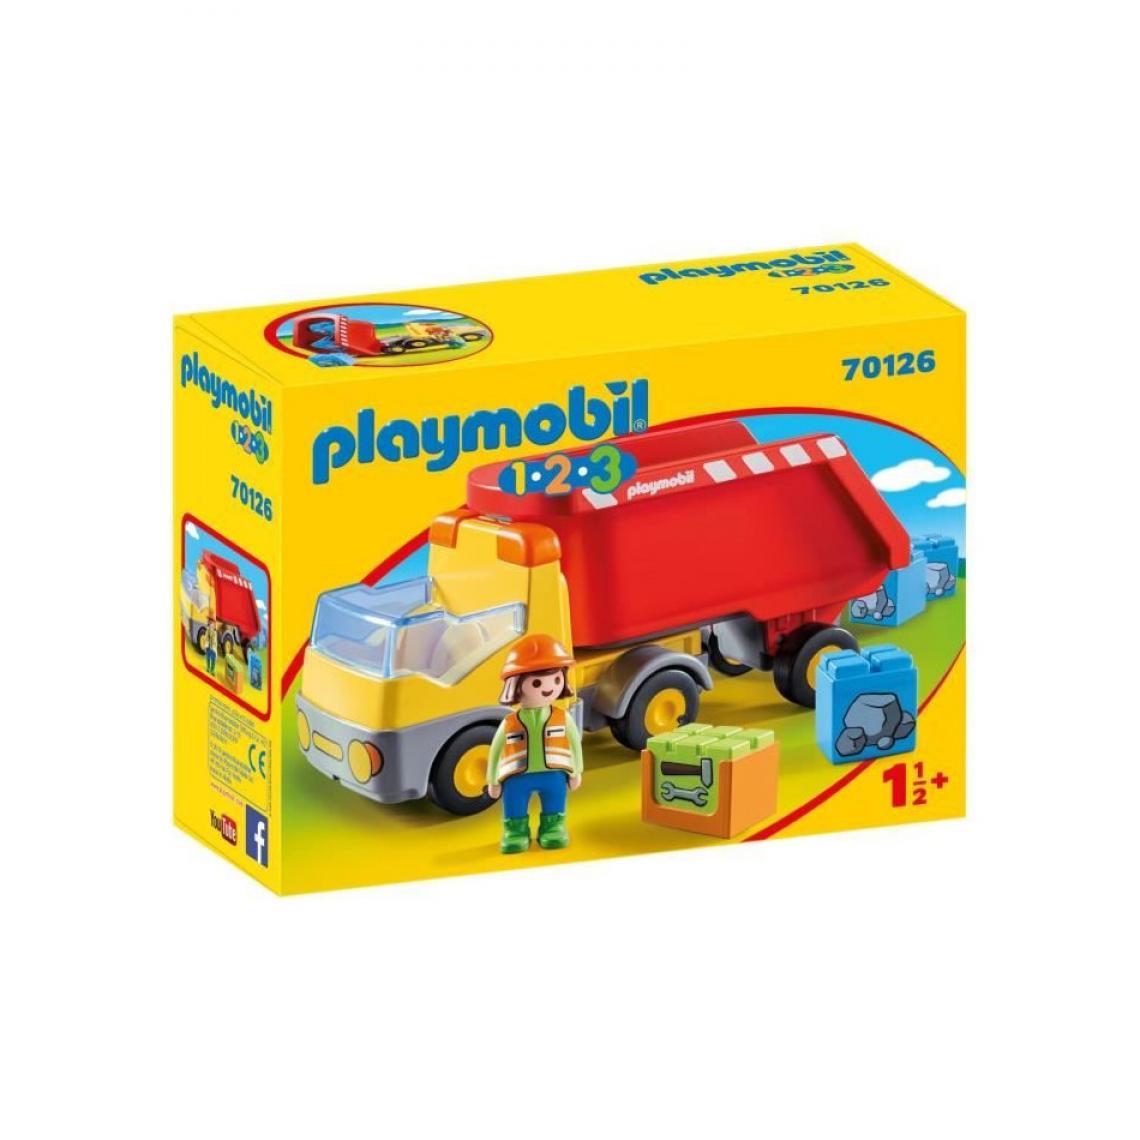 Playmobil - PLAYMOBIL 70126 - 1.2.3 - Camion benne - Playmobil